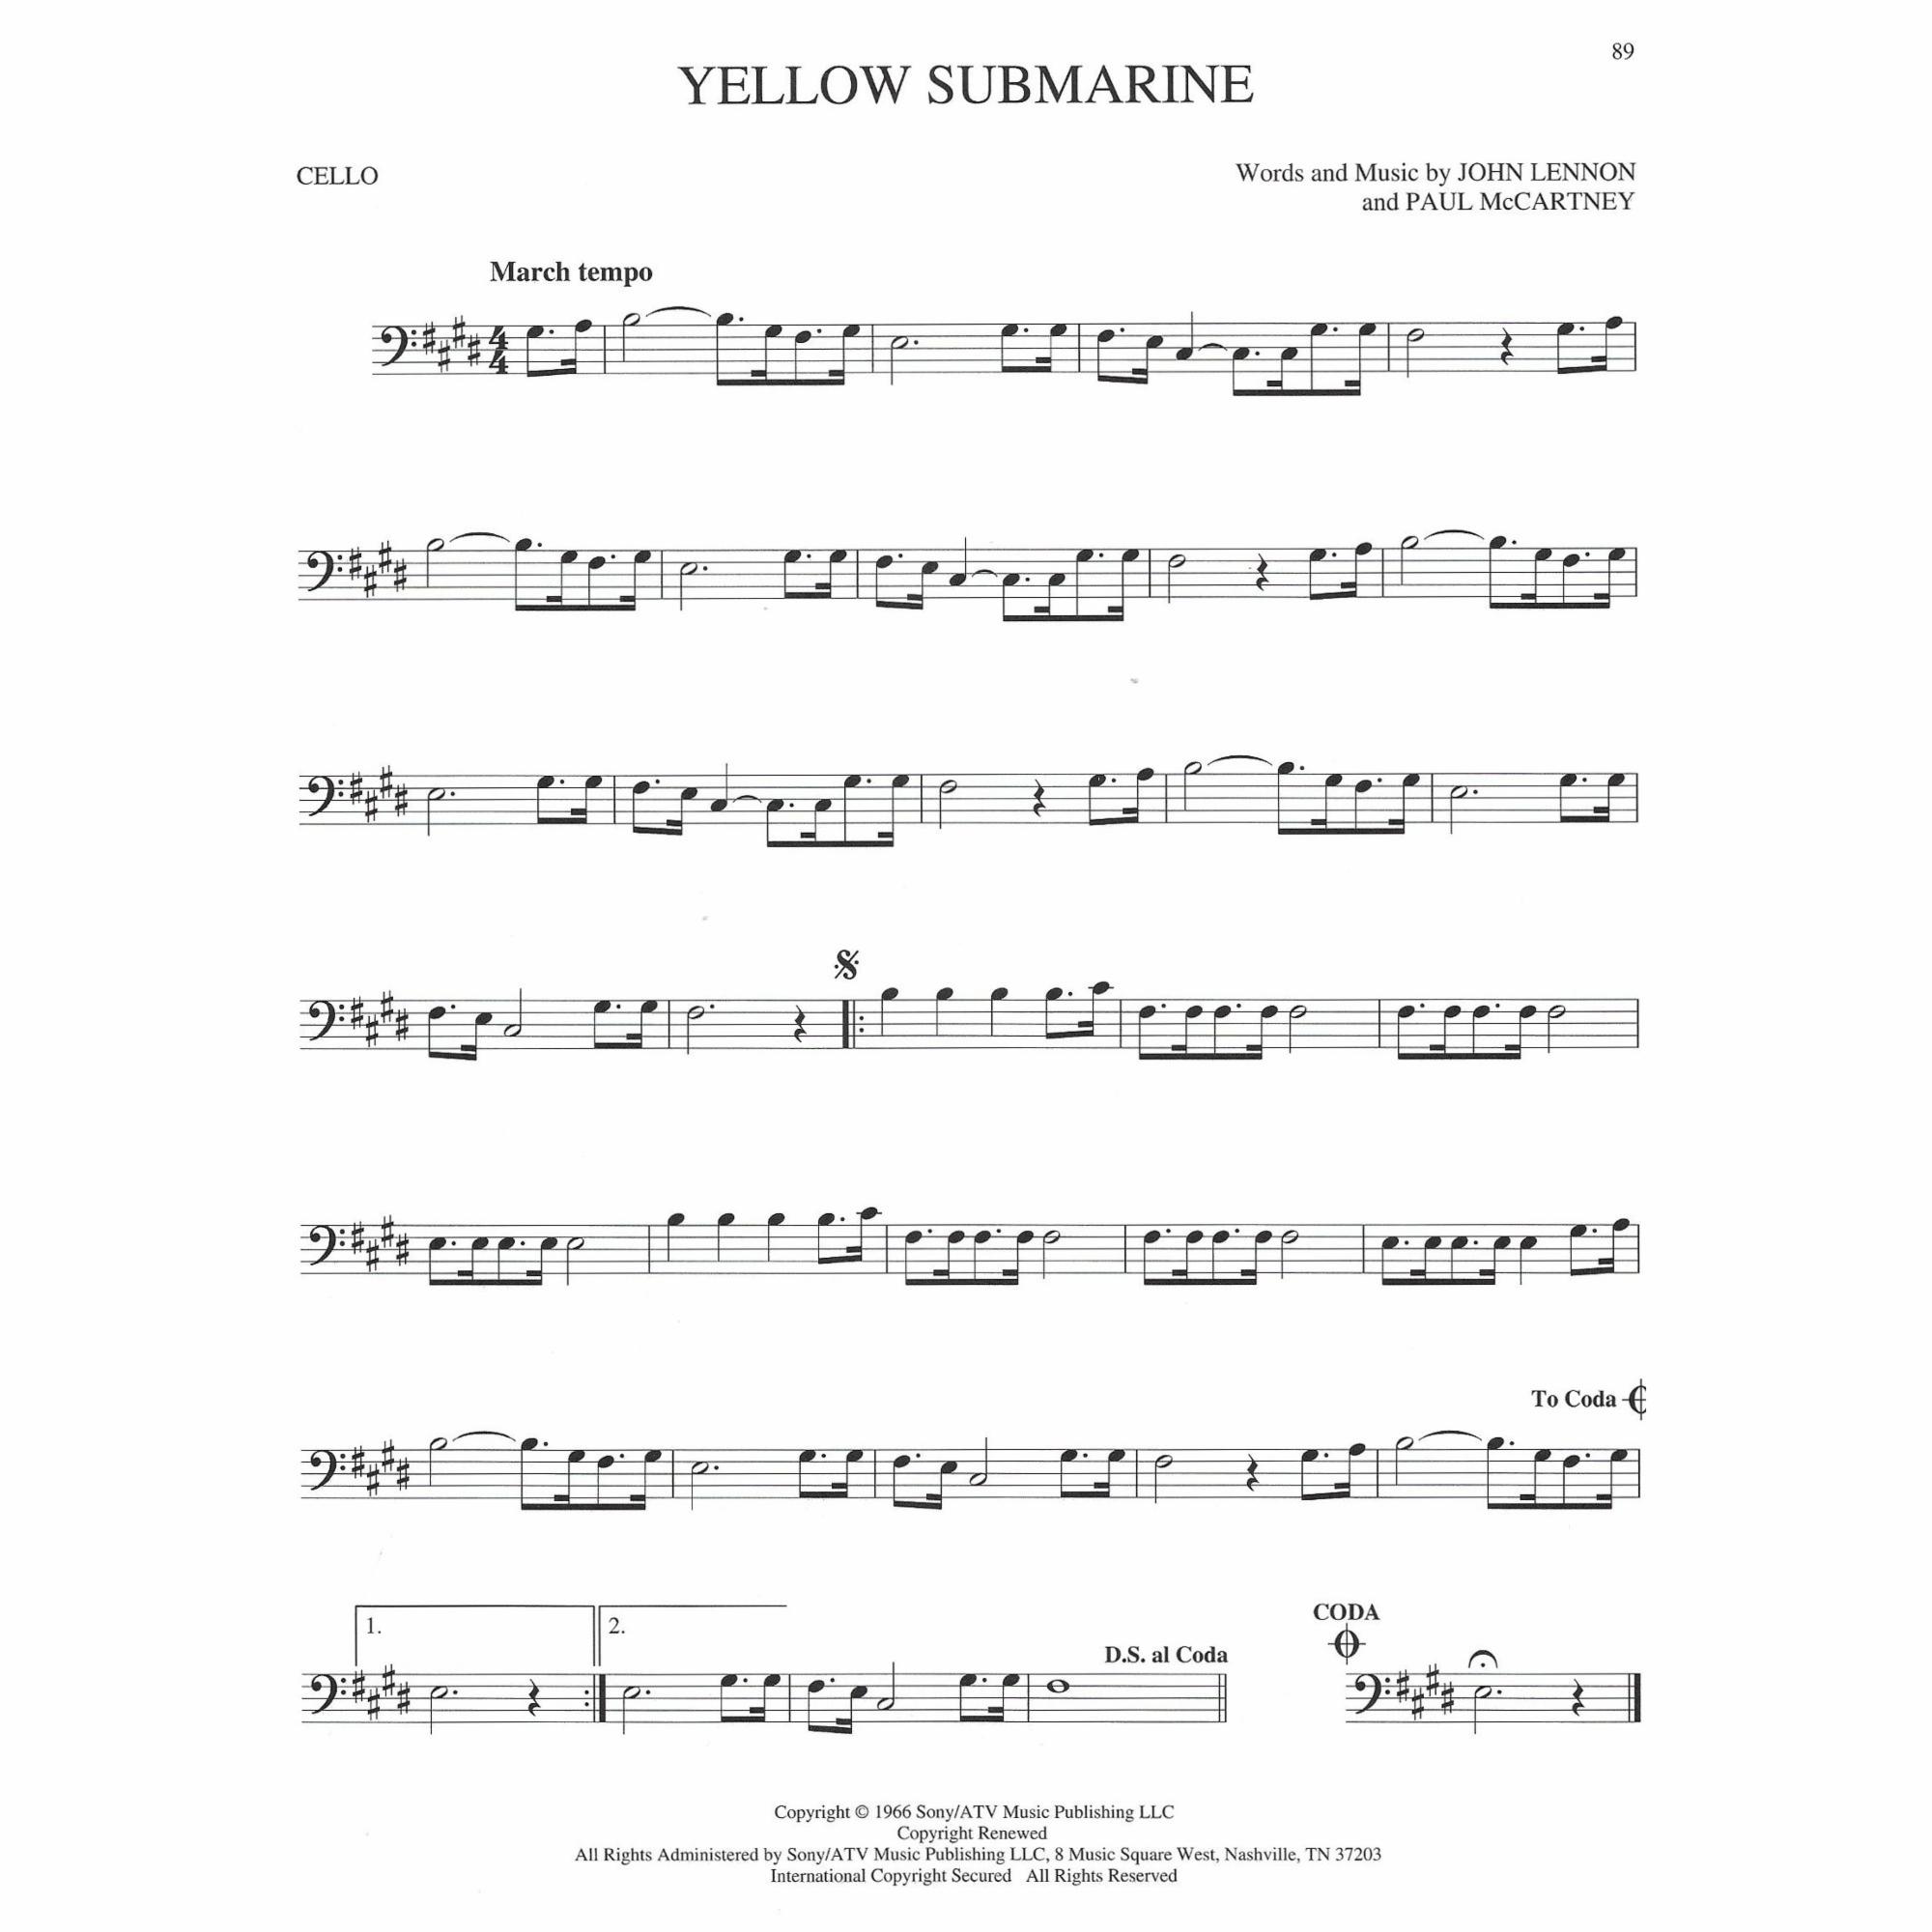 Sample: Violin (Pg. 89)